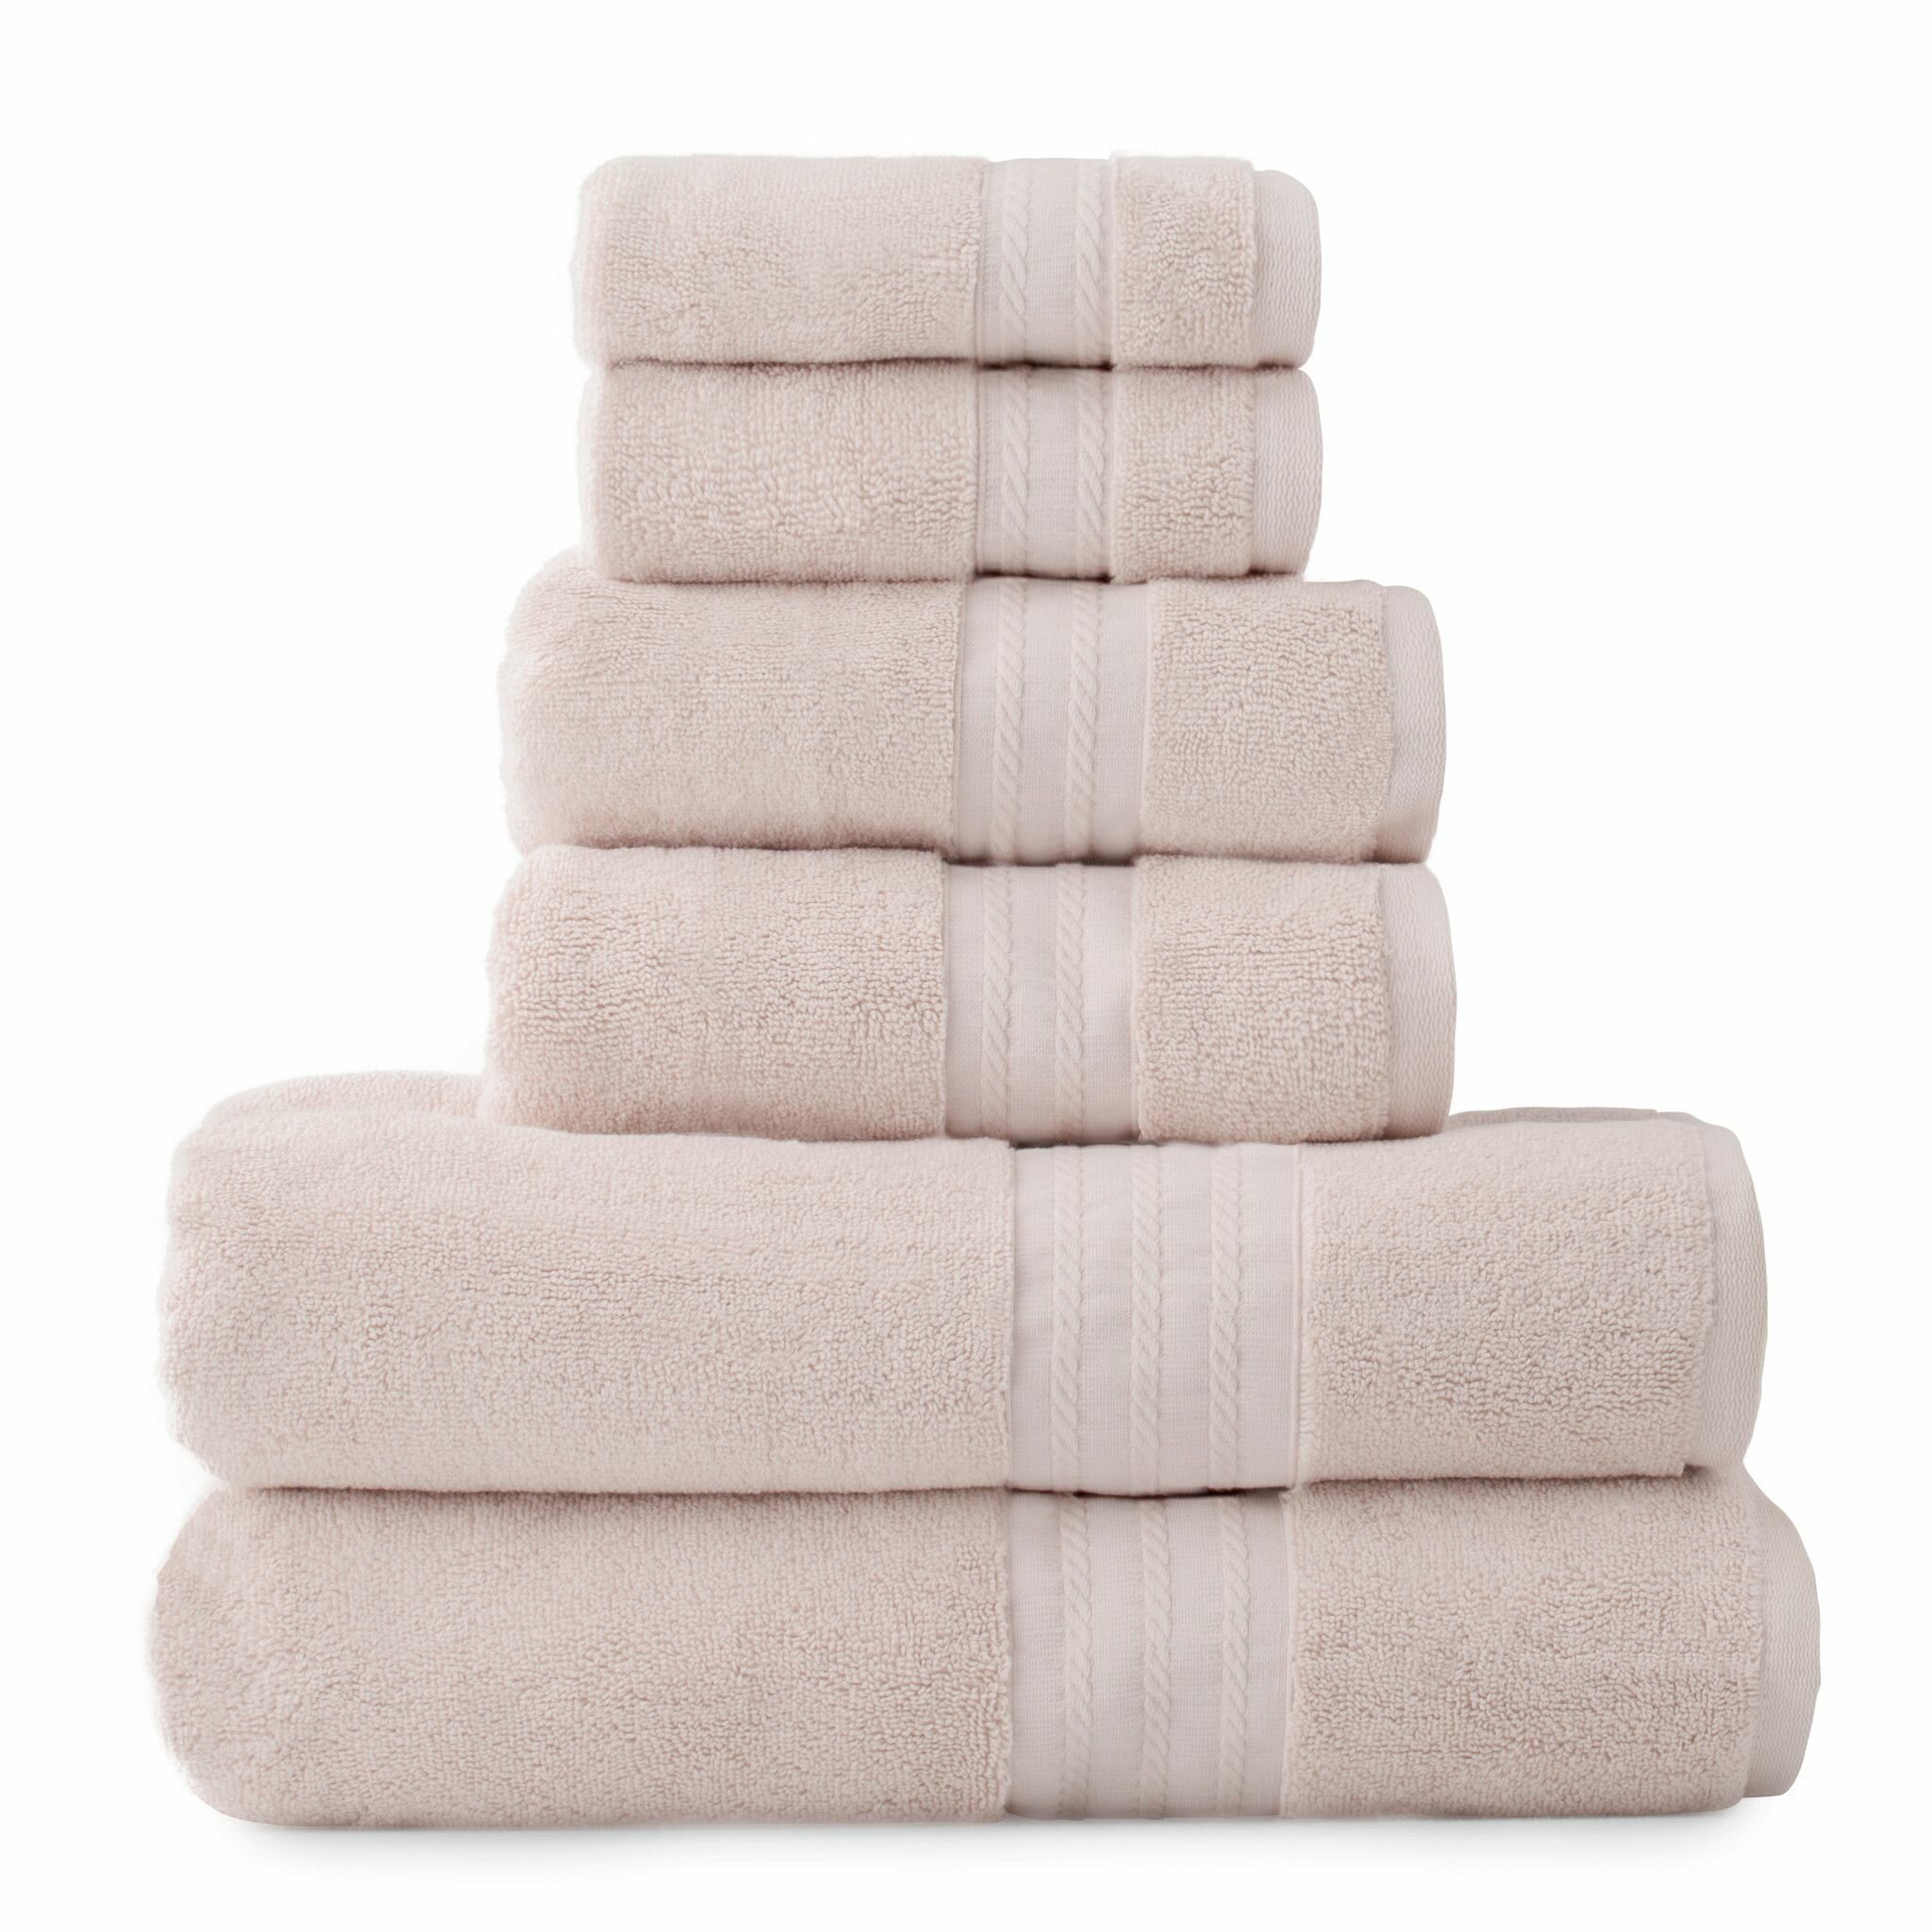 Bath Towels With Hanging Loop Wayfair